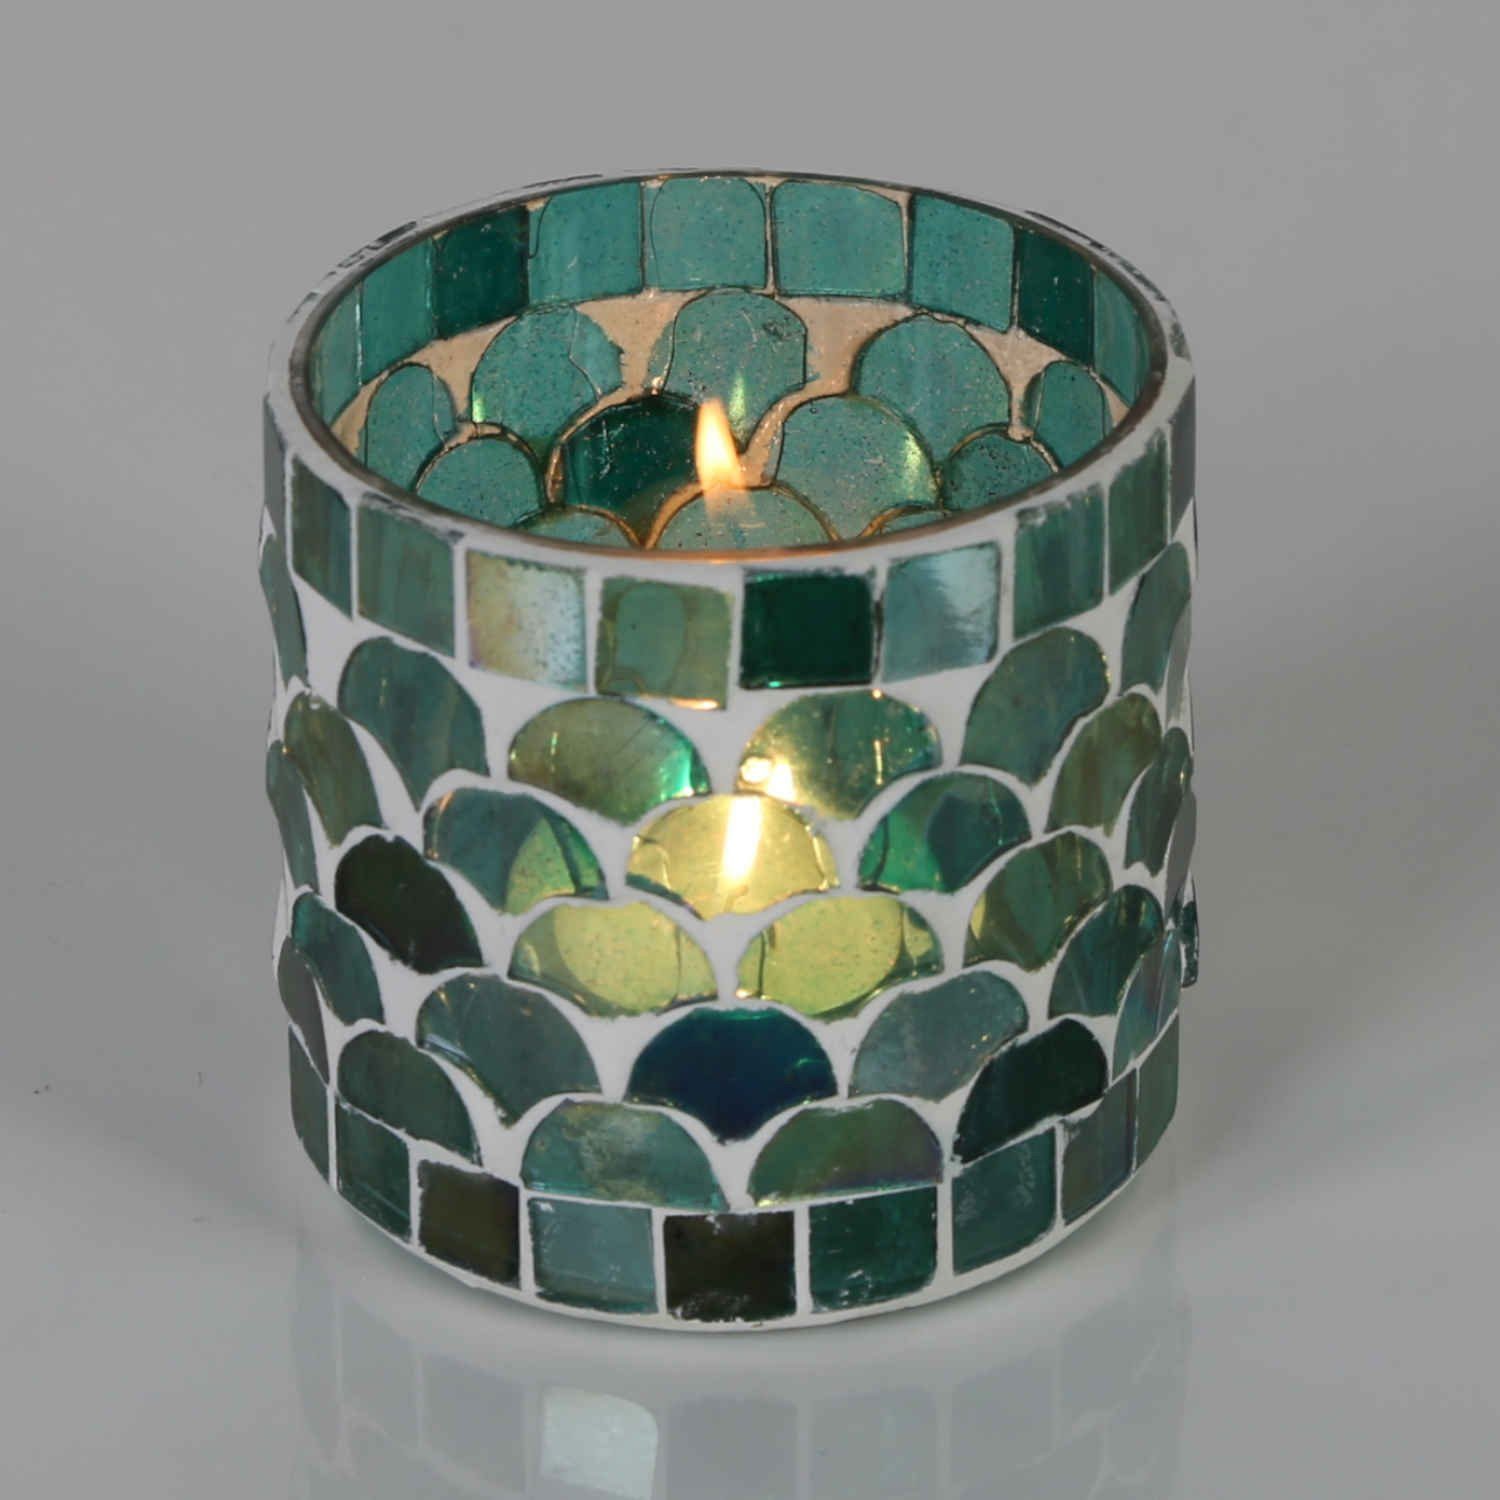 Casa Moro Windlicht Orientalisches Mosaik Windlicht Athen Grün aus Glas handgefertigt (Boho Chic Teelichthalter Kerzenständer Kerzenhalter, Glaswindlicht in den Größen S und M oder als 2er Set bestellbar), Kunsthandwerk pur für einfach schöner wohnen